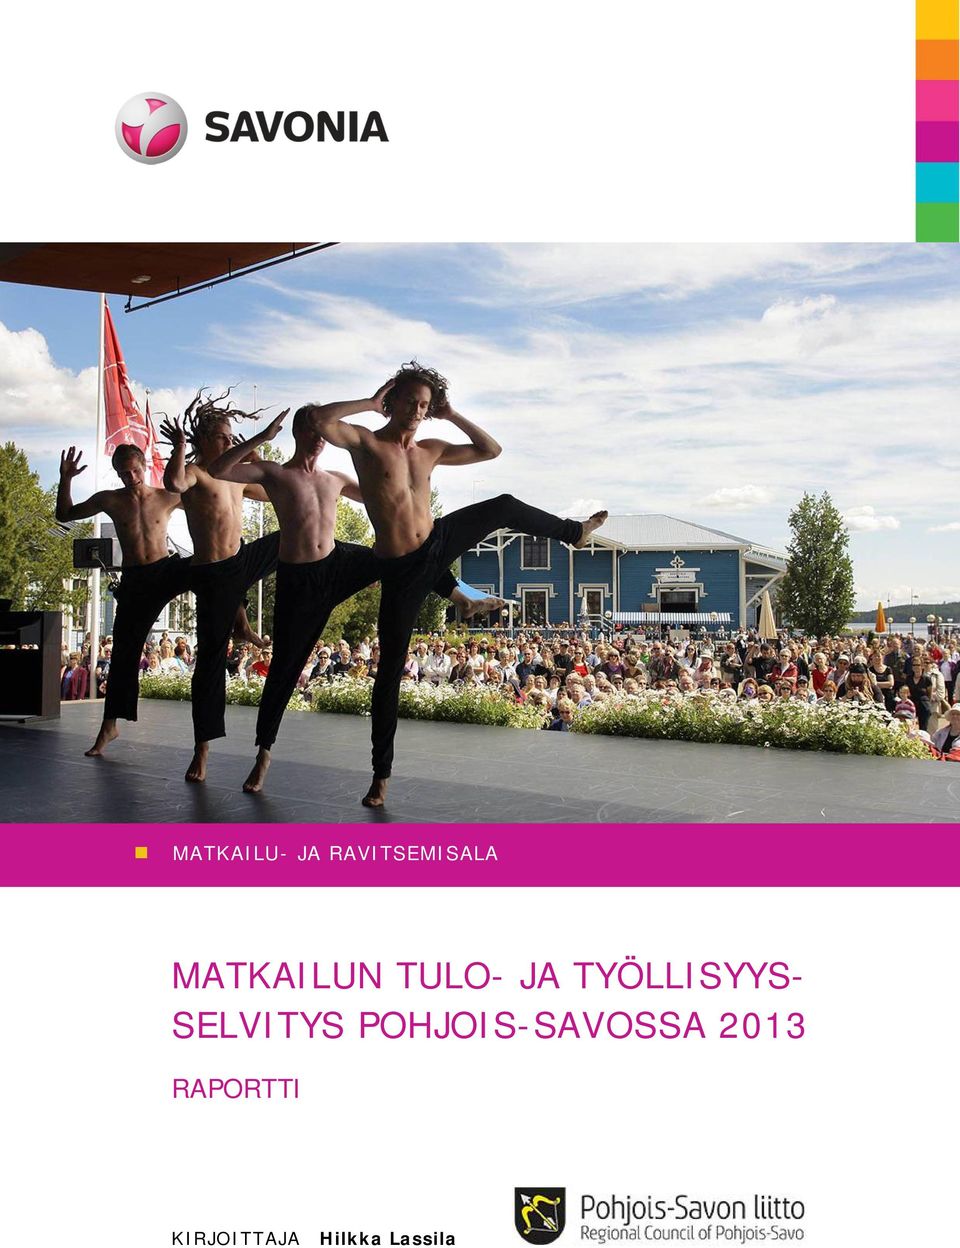 SELVITYS POHJOIS-SAVOSSA 2013